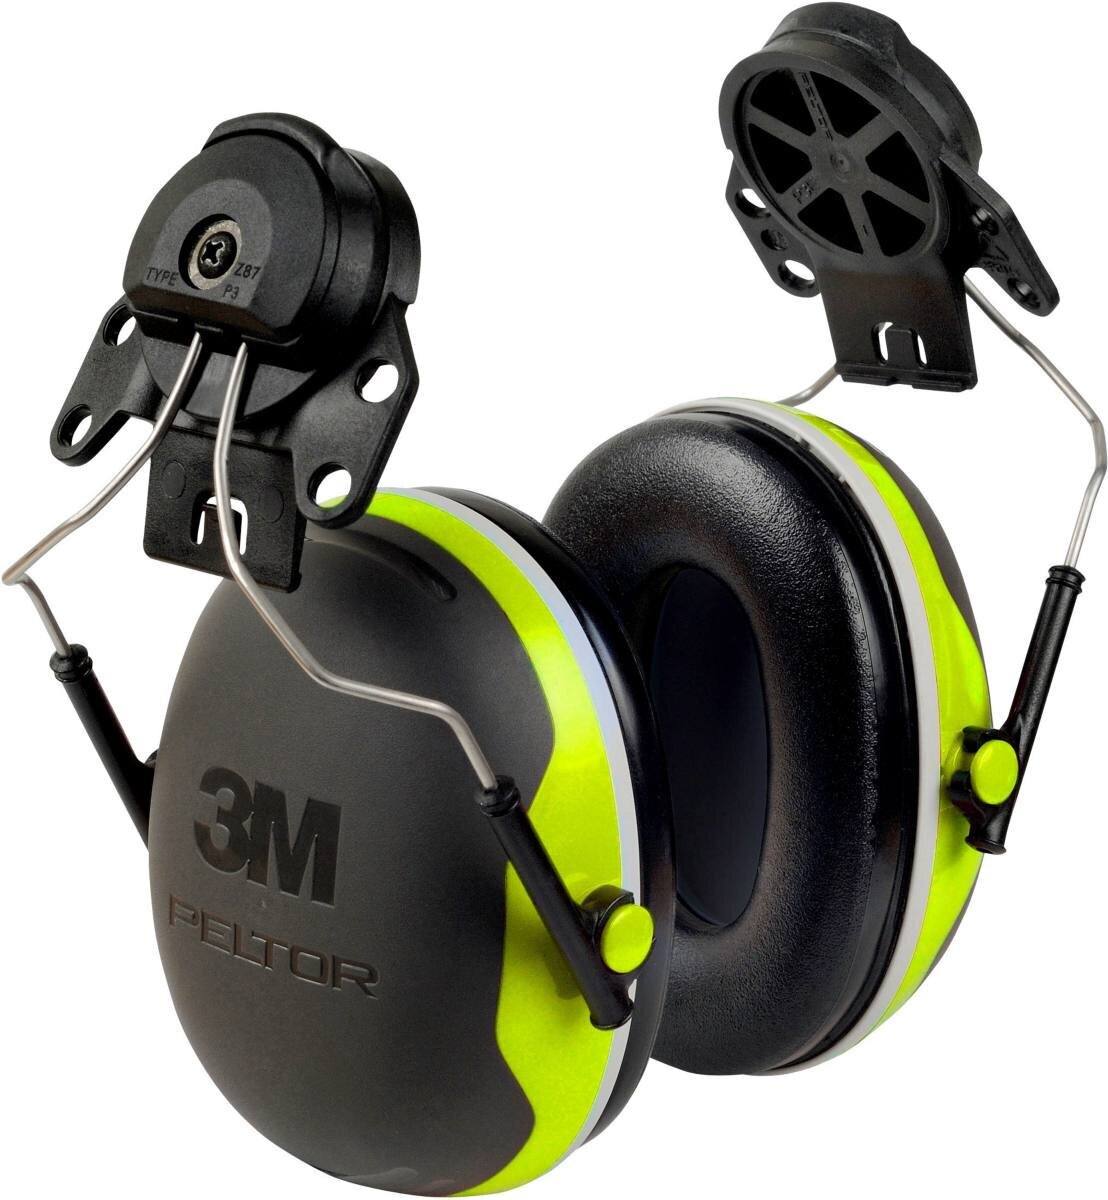 3M Peltor Kapselgehörschutz, X4P3E Helmbefestigung, neon, gelb, SNR = 32 dB mit Helmadapter P3E (für alle 3M Helme, ausgenommen G2000)